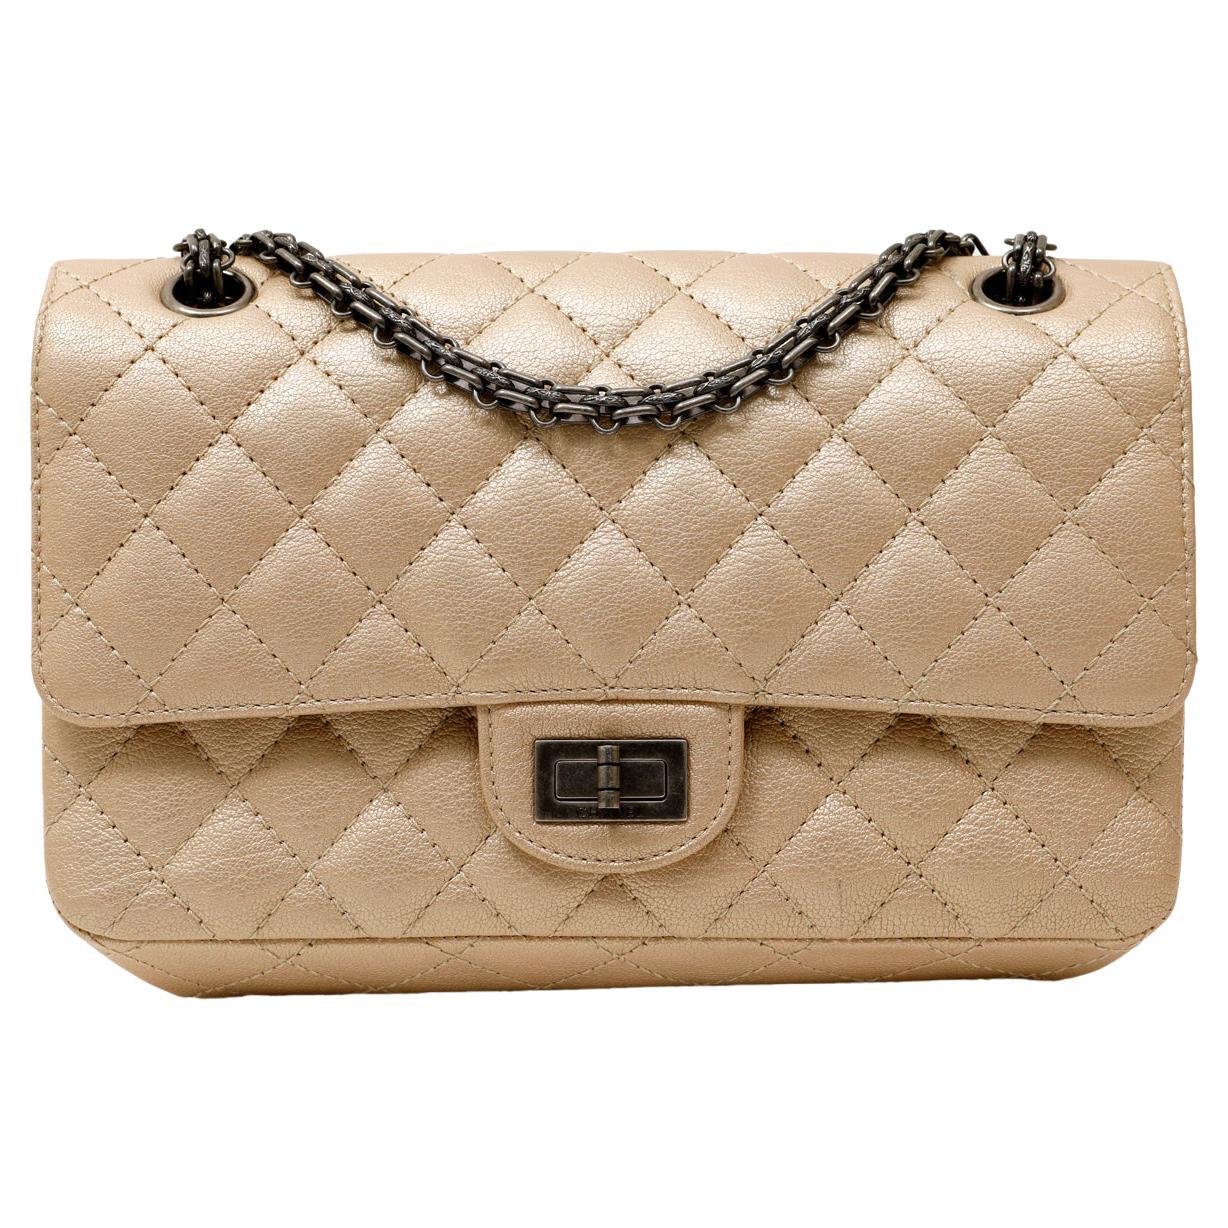 Chanel Bag Metallic - 81 For Sale on 1stDibs | chanel bag metal 